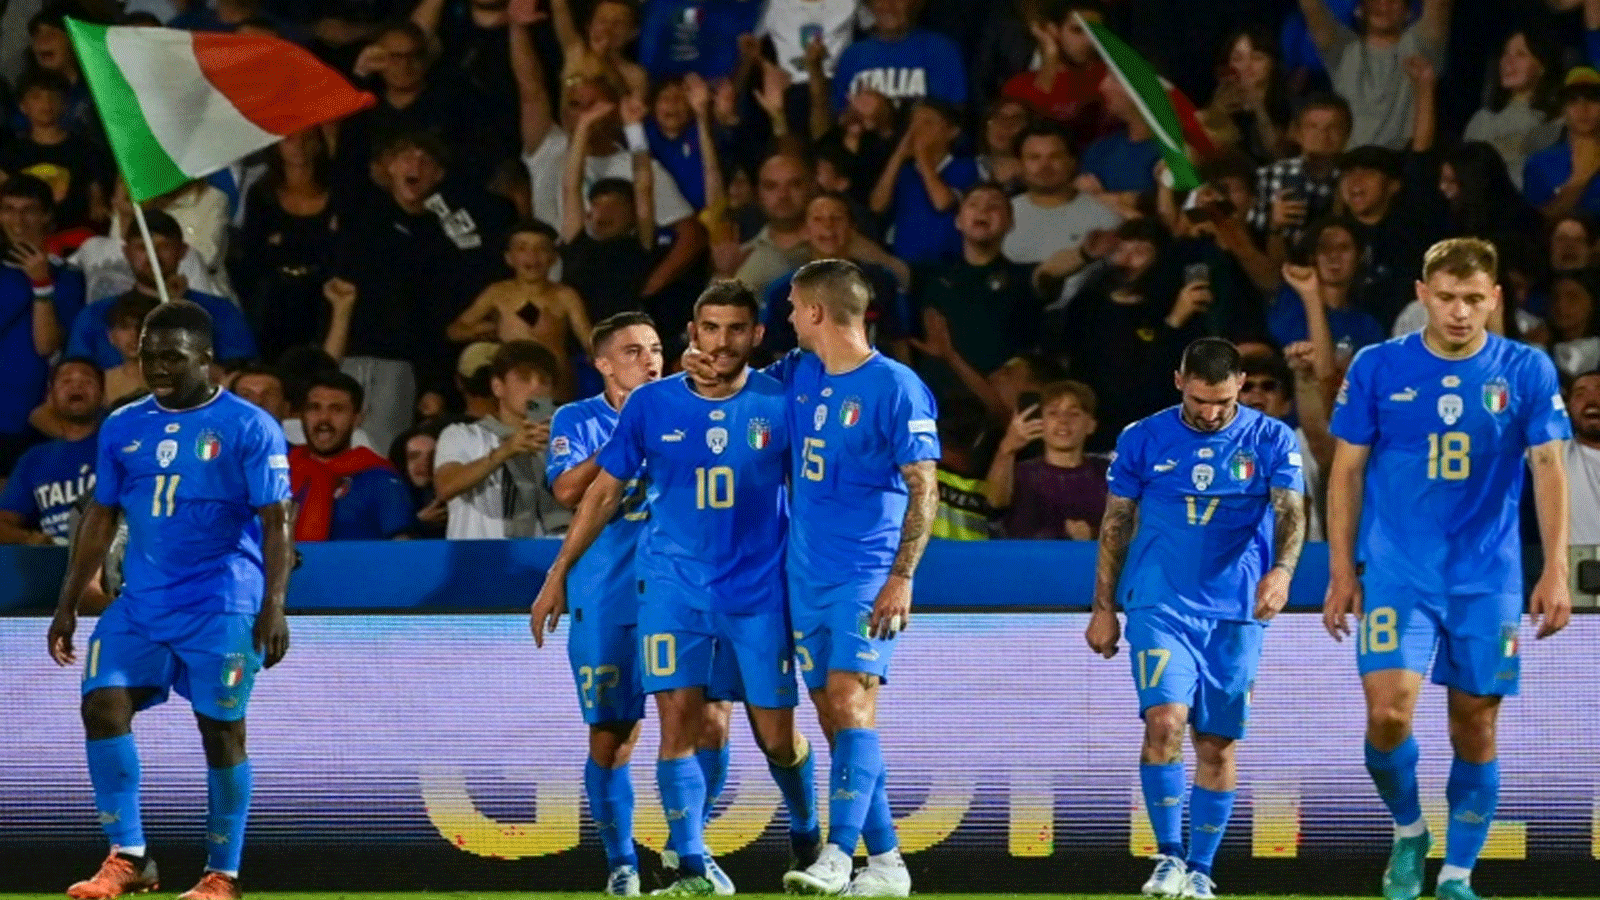 لاعب وسط إيطاليا لورنتسو بيليغريني يحتفل مع زملائه بالهدف الثاني في مرمى المجر خلال الجولة الثانية من مسابقة دوري الأمم الأوروبية على ملعب دينو مانوتسي في تشيزينا في 7 حزيران/يونيو 2022